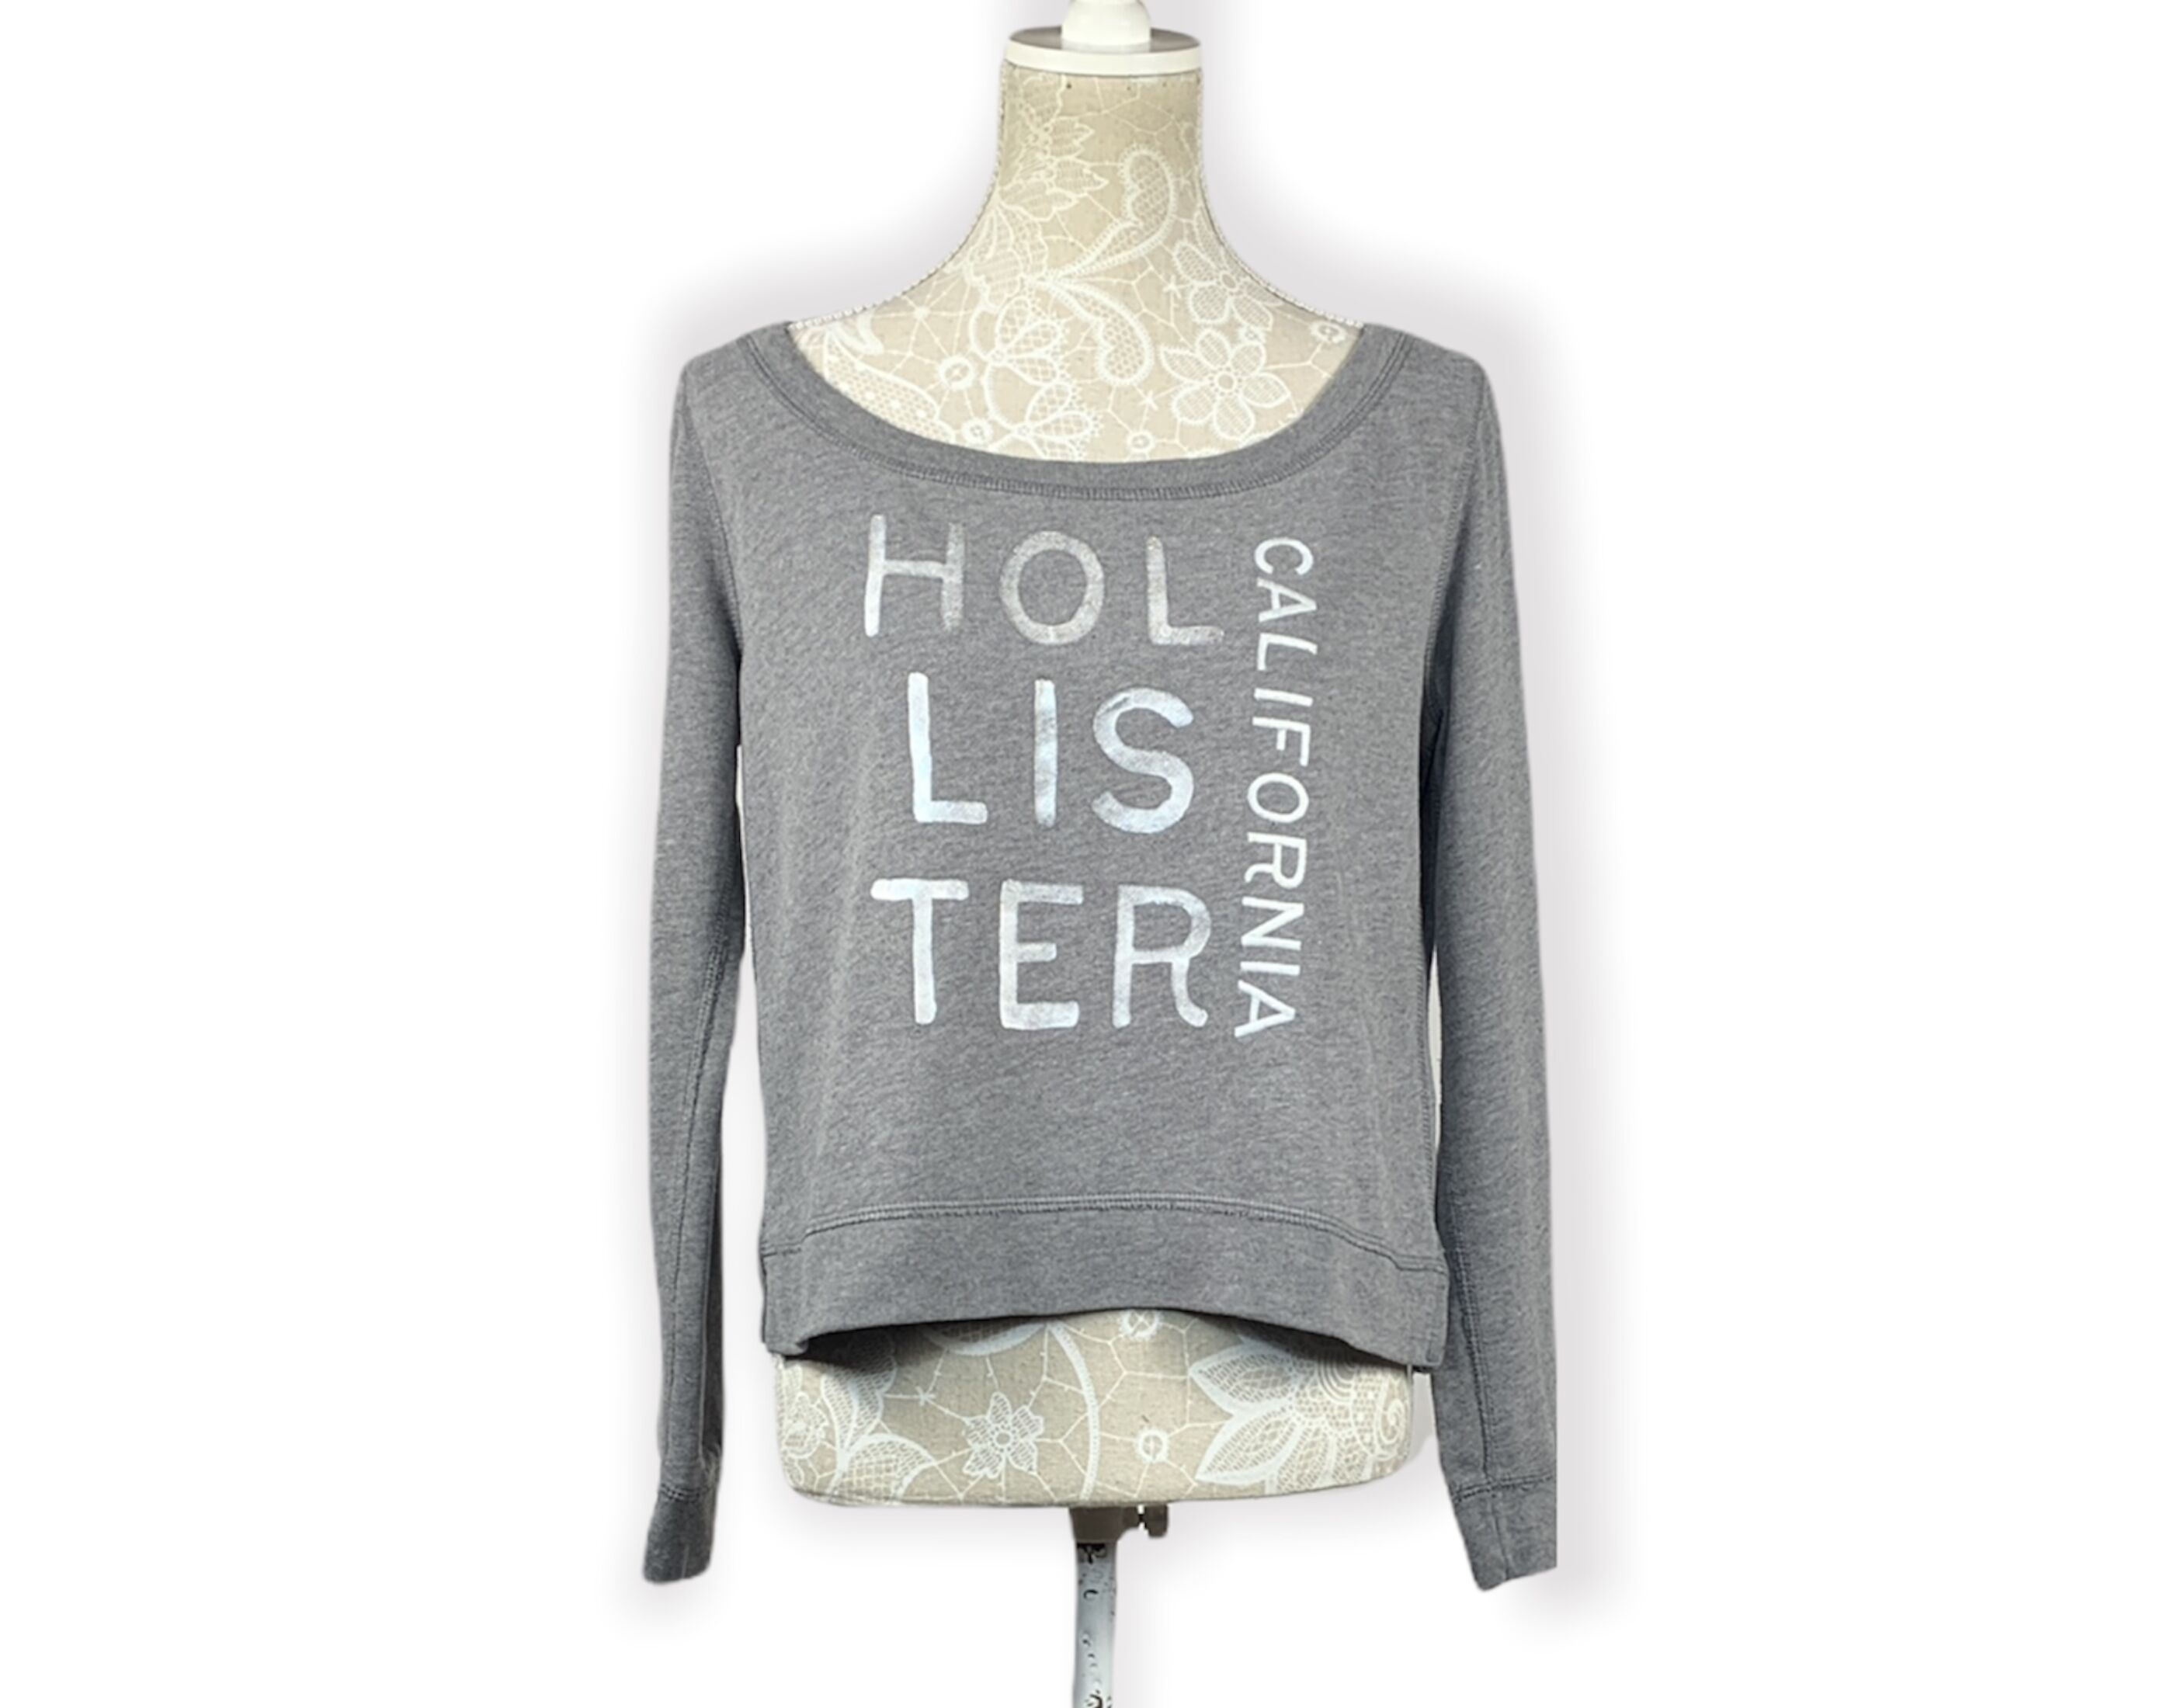 Hollister pulóver (M)